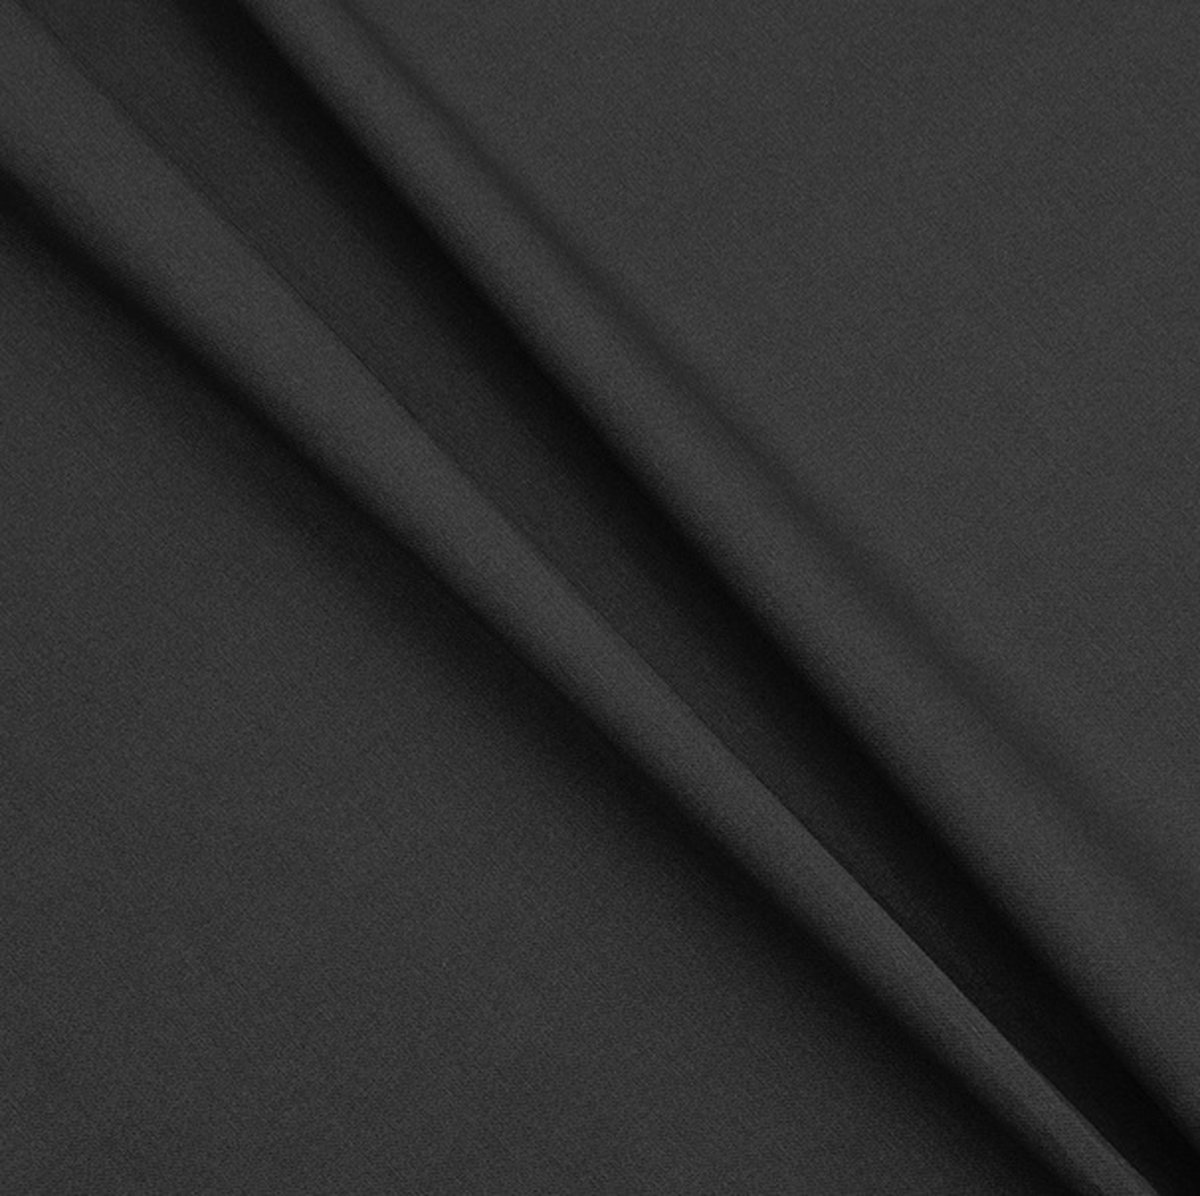 Gecoat tafelkleed/tafellinnen - Afwasbaar - Op koker geleverd - kleur: effen zwart - 180x140cm